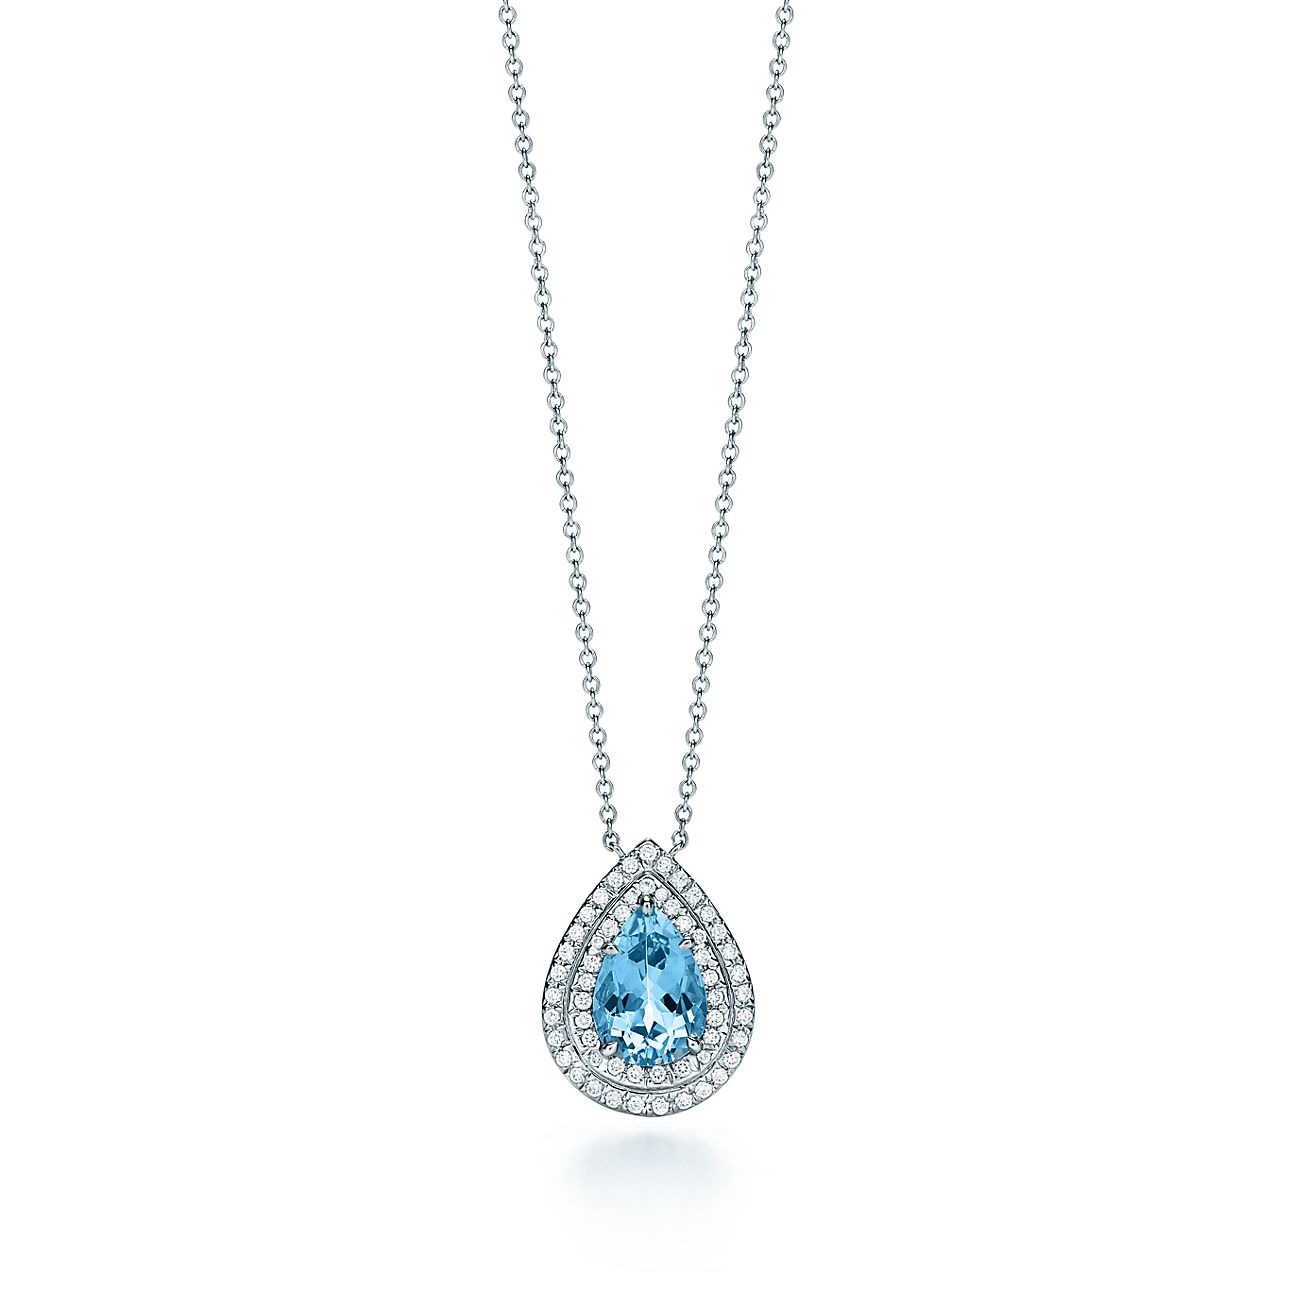 Large Aquamarine & Diamond Pendant Necklace 18K